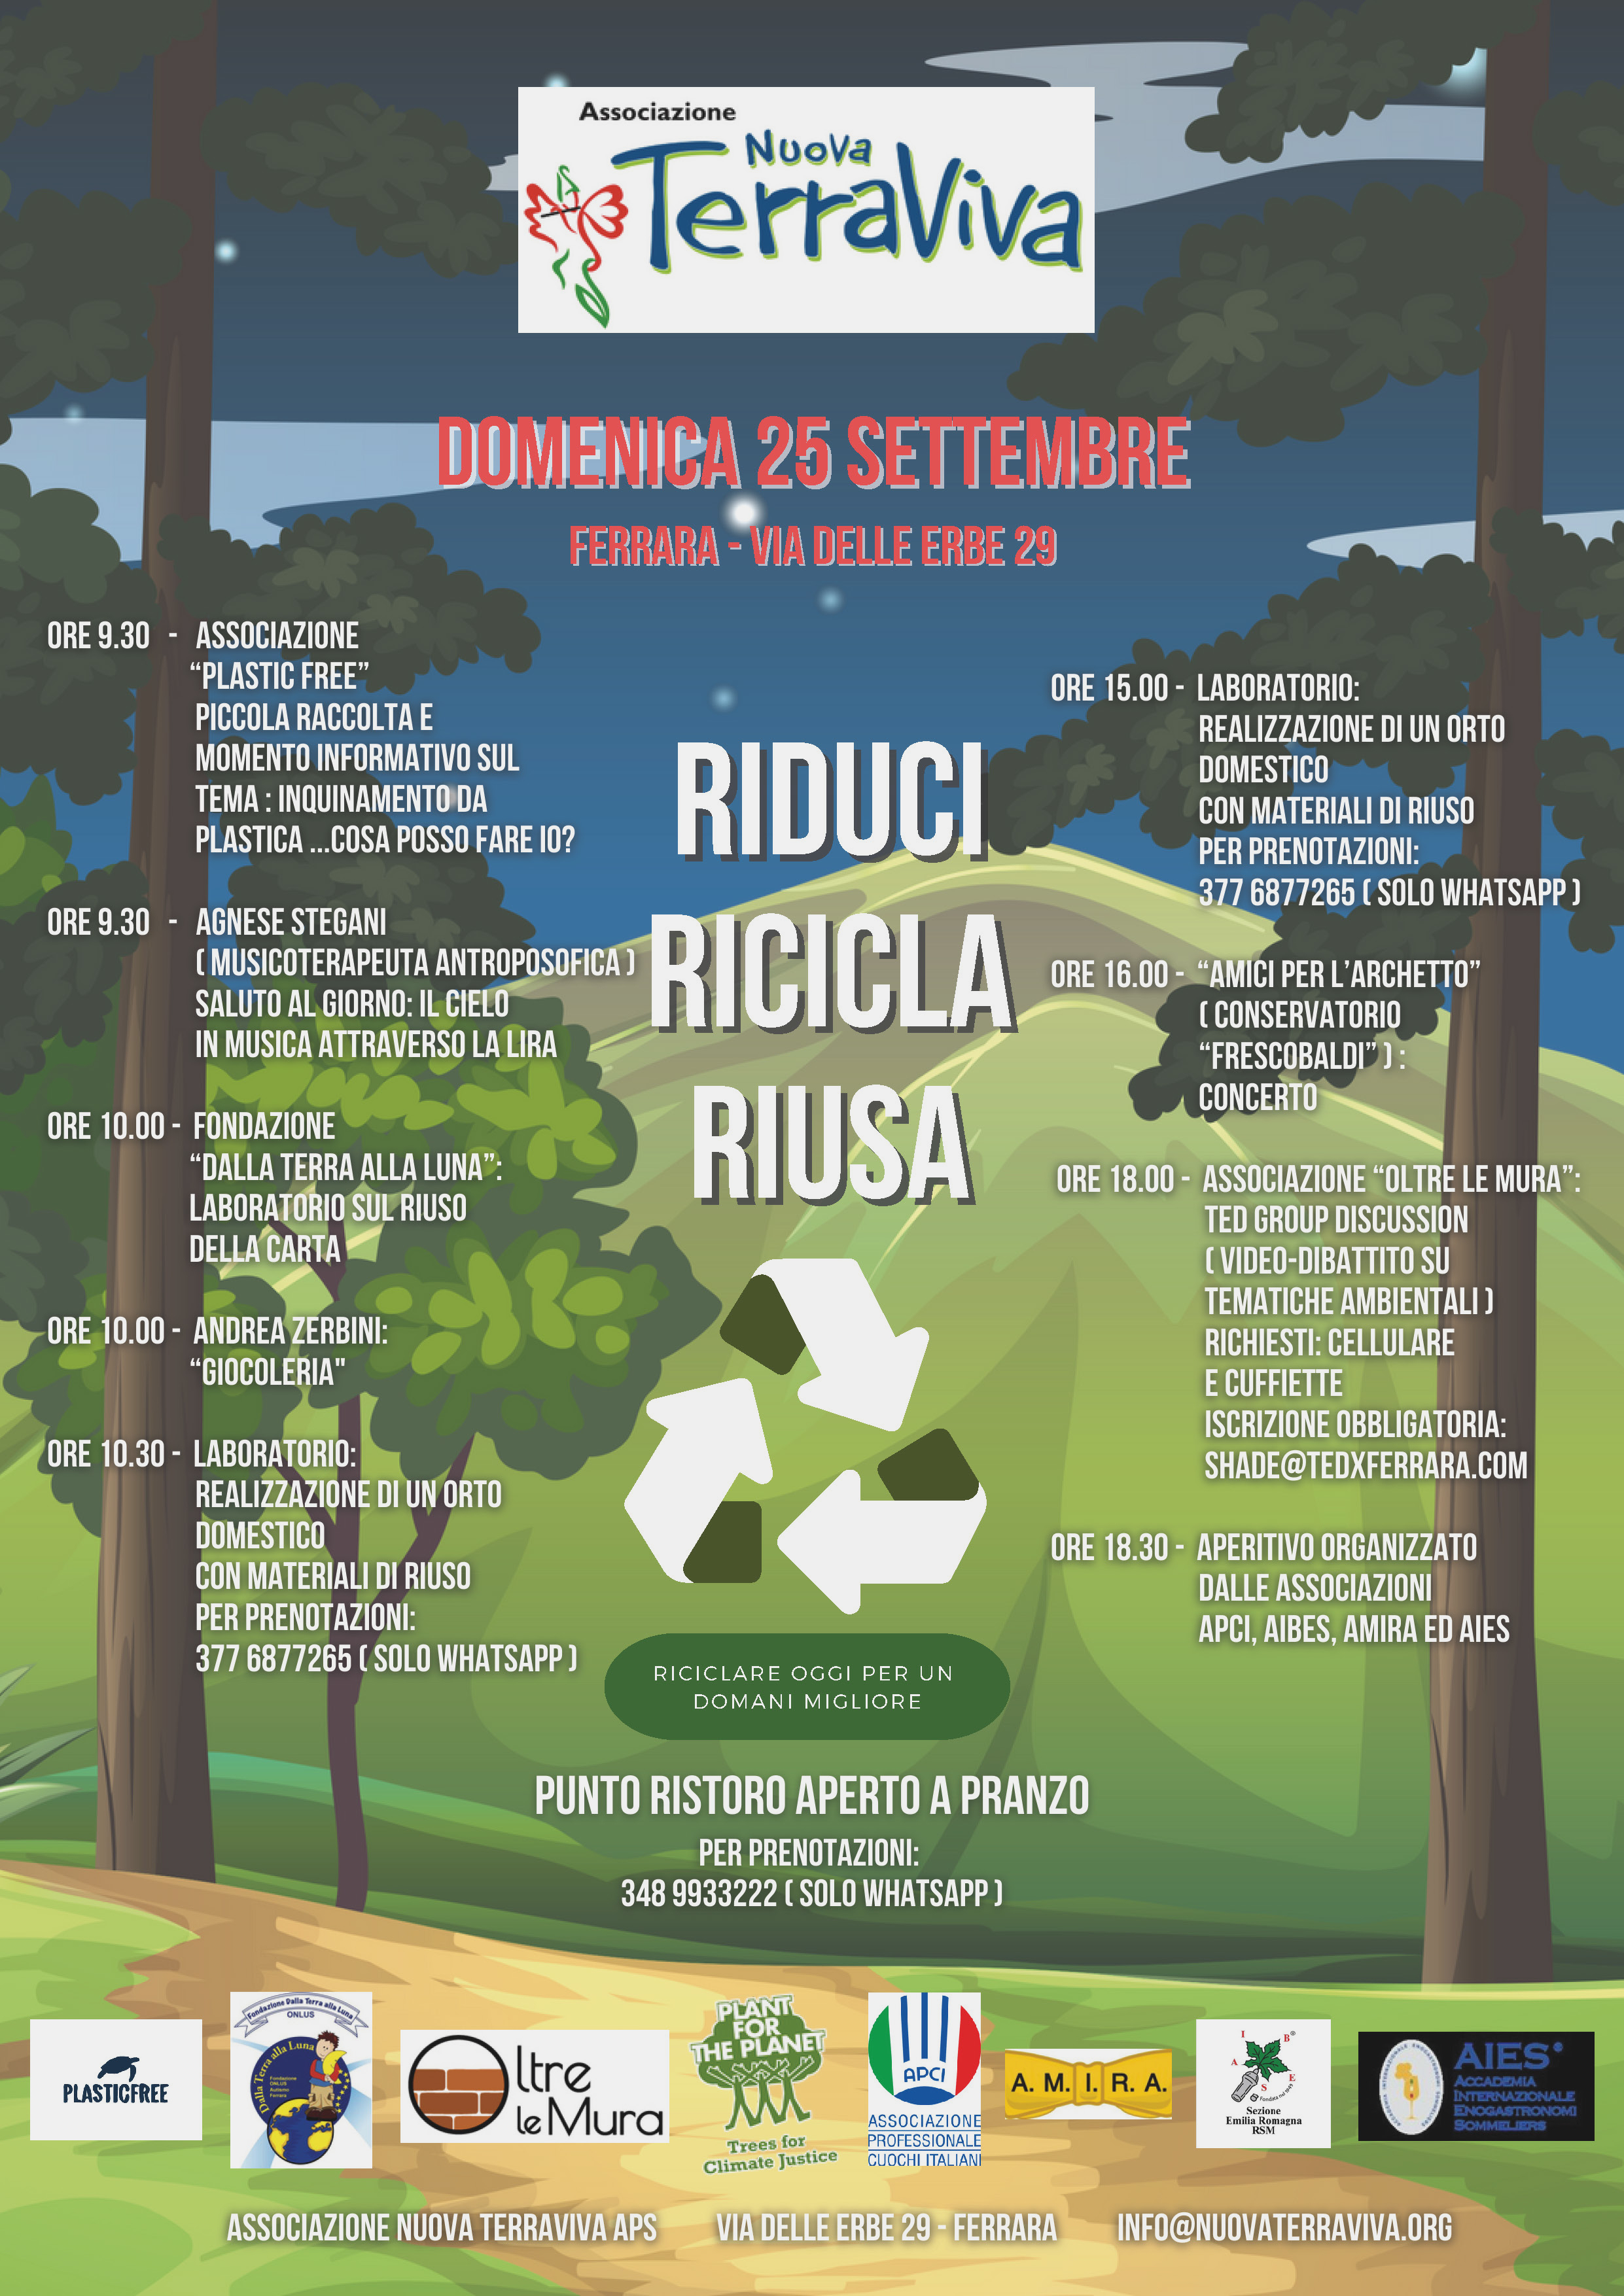 Domenica 25 settembre: RIDUCI RICICLA RIUSA